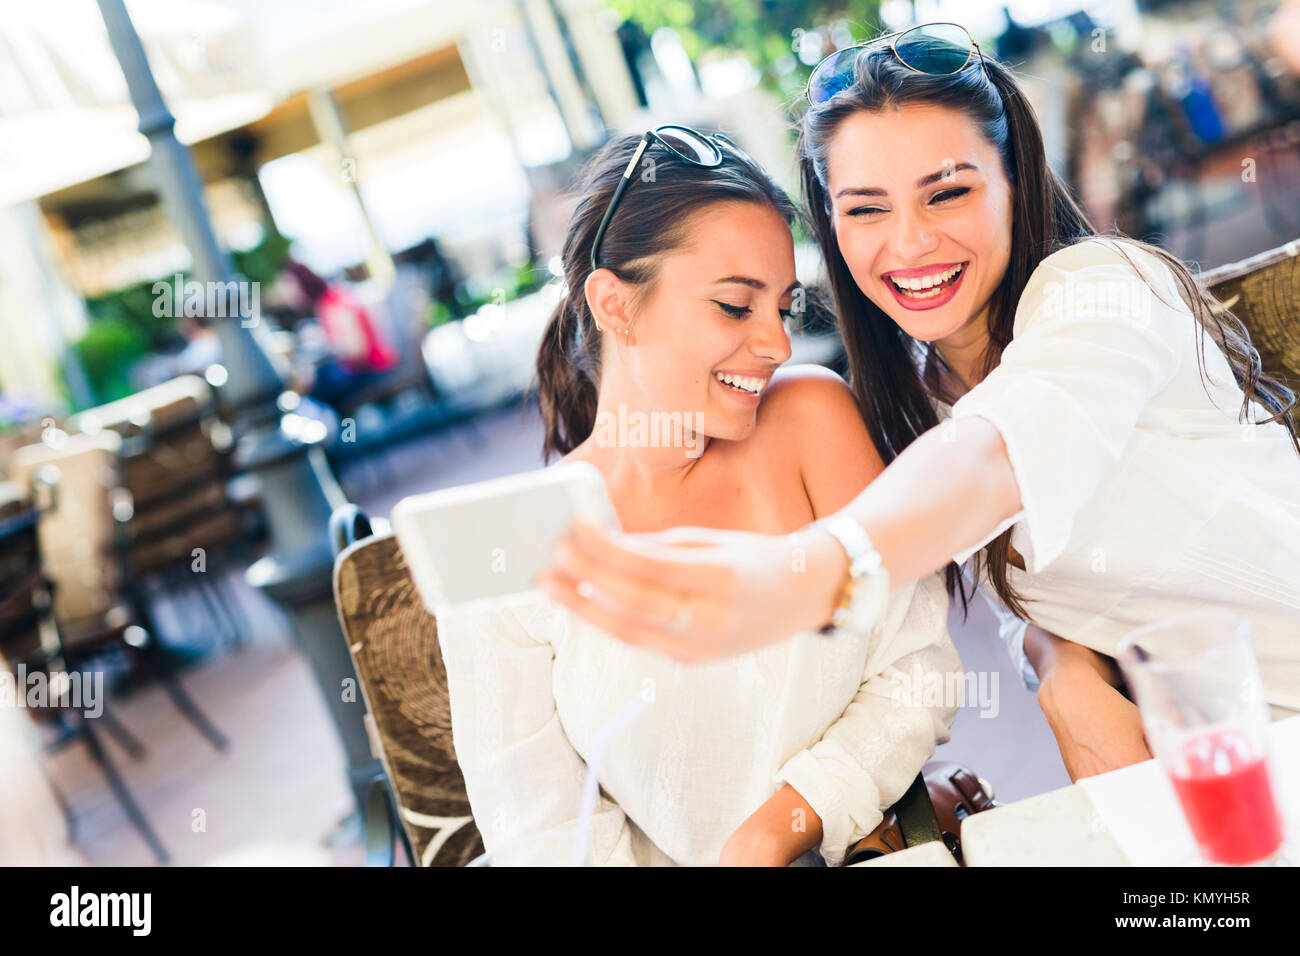 Zwei junge schöne Frauen, die eine selfie von sich selbst Stockfoto